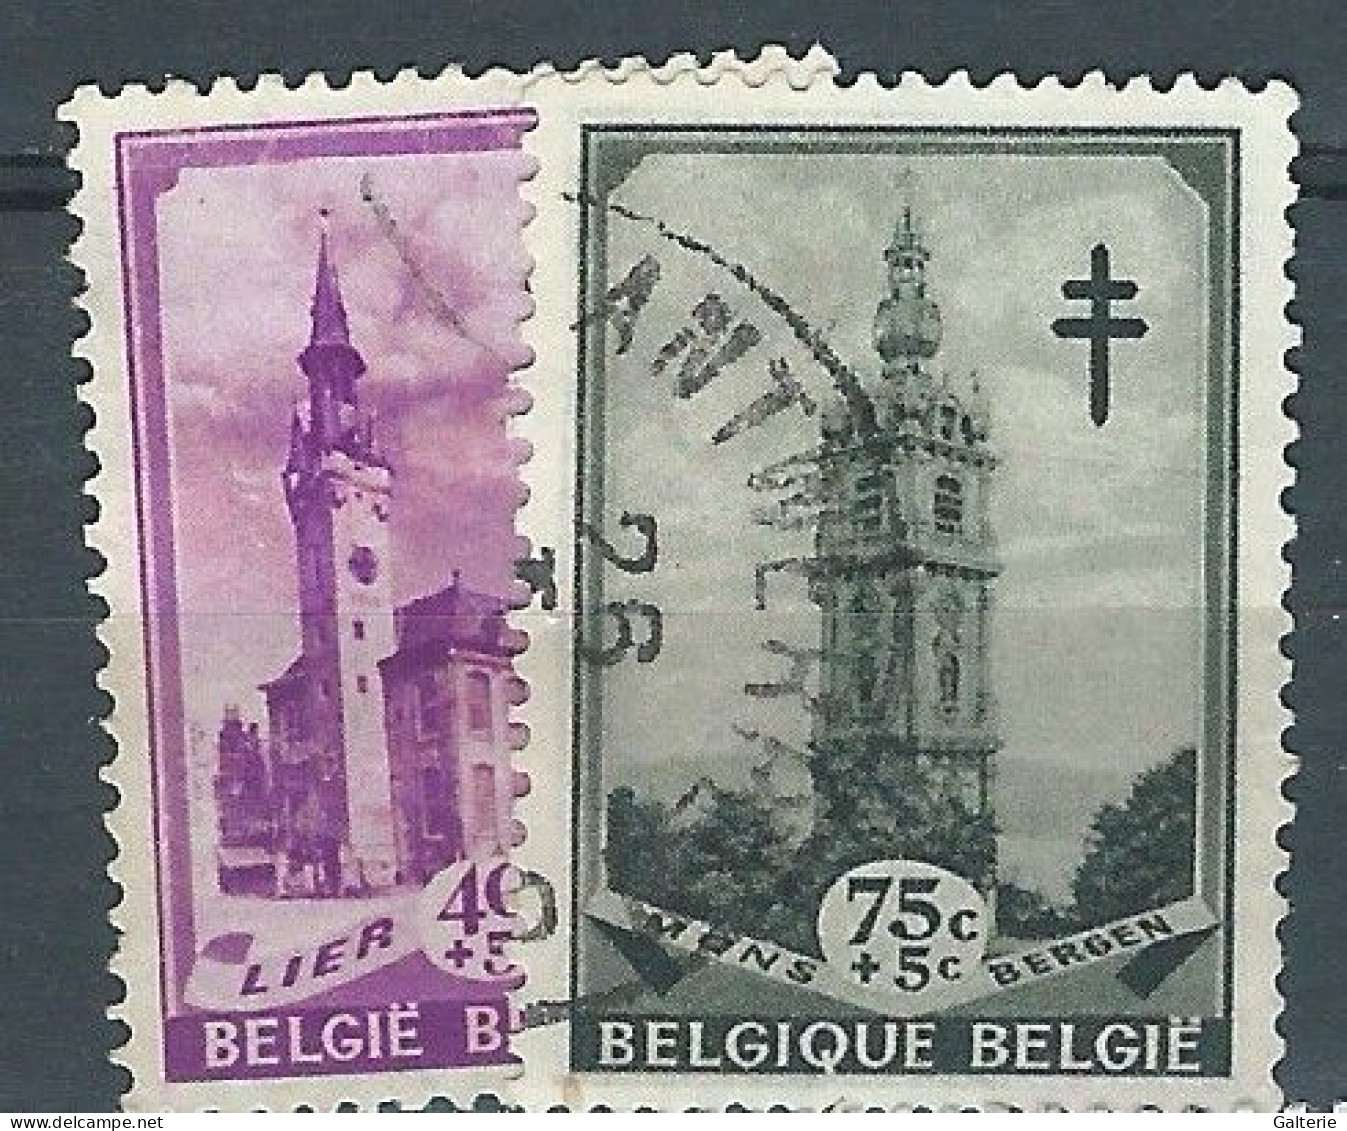 BELGIQUE -obl-1939 - COB N° 521-522- Beffrois - Usados